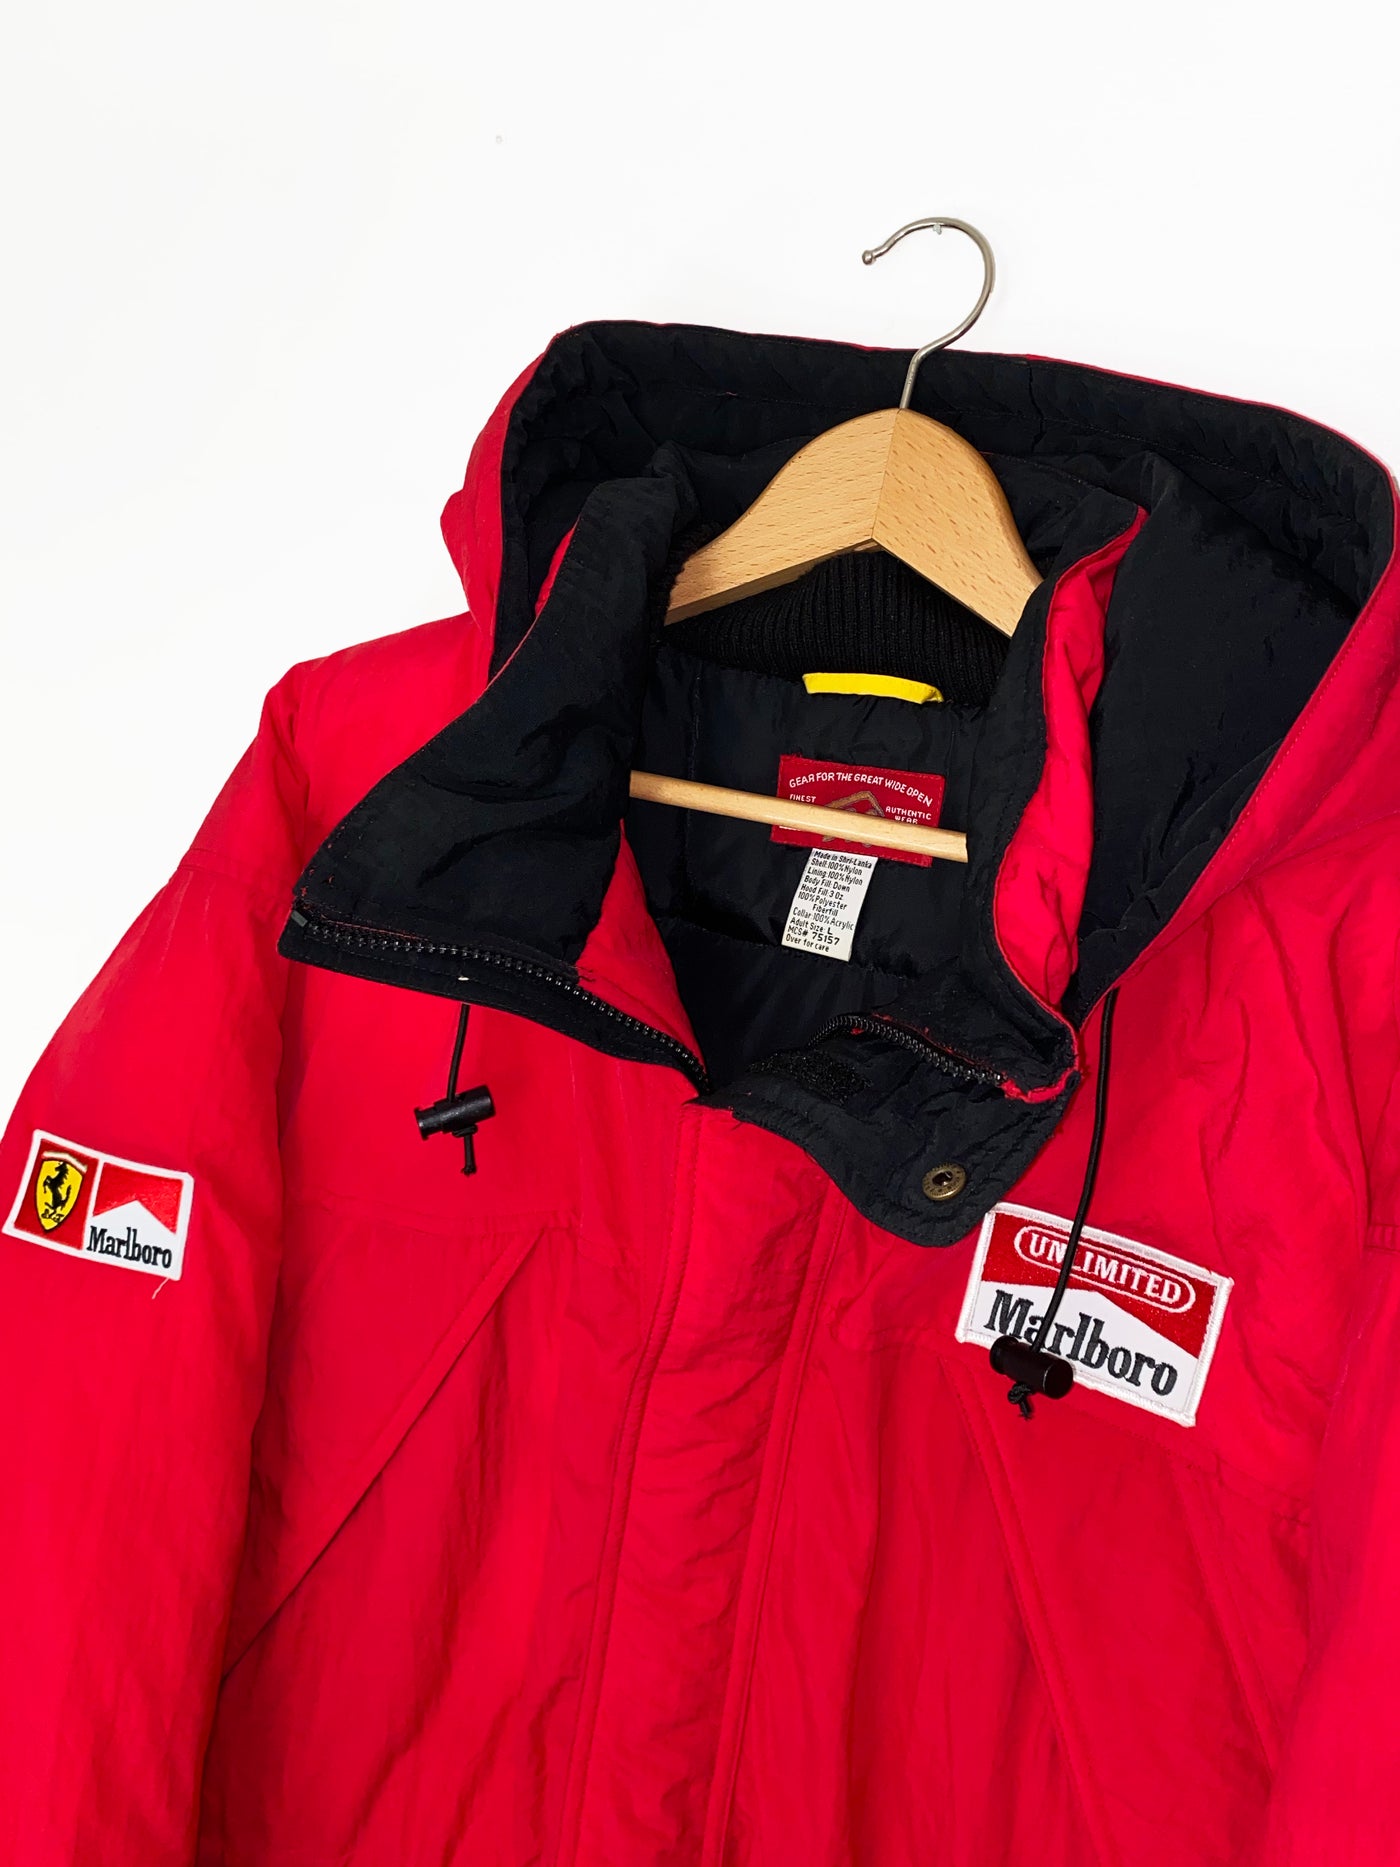 Vintage Marlboro Adventure Team Parka Down Jacket with Detachable Hood